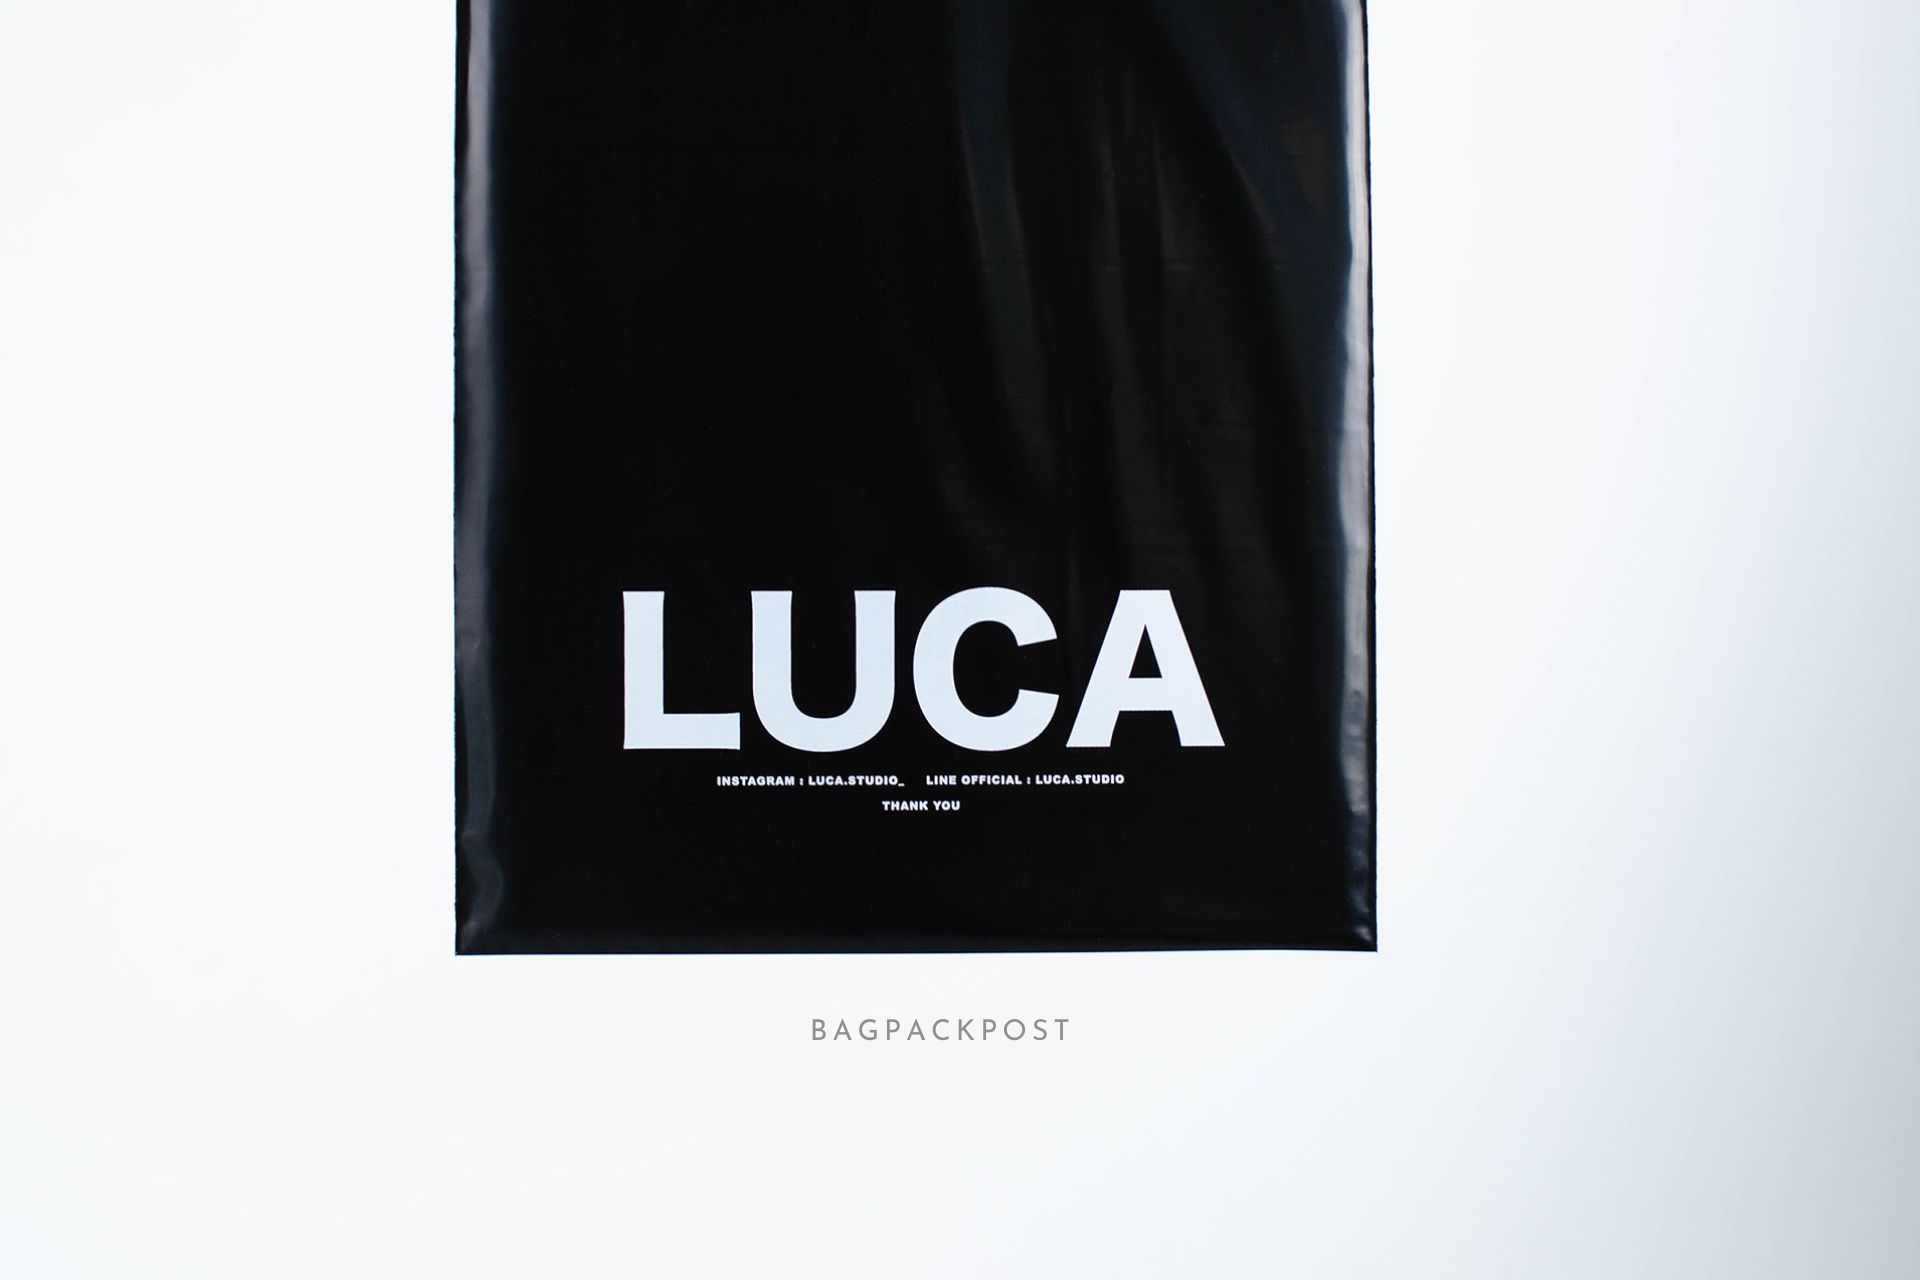 ผลิตถุงไปรษณีย์ ถุงพัสดุ ซองไปรษณีย์พิมพ์ลาย Luca ซองไปรษณีย์สีดำ ถุงไปรษณีย์พิมพ์ลาย 3 BagPackPost